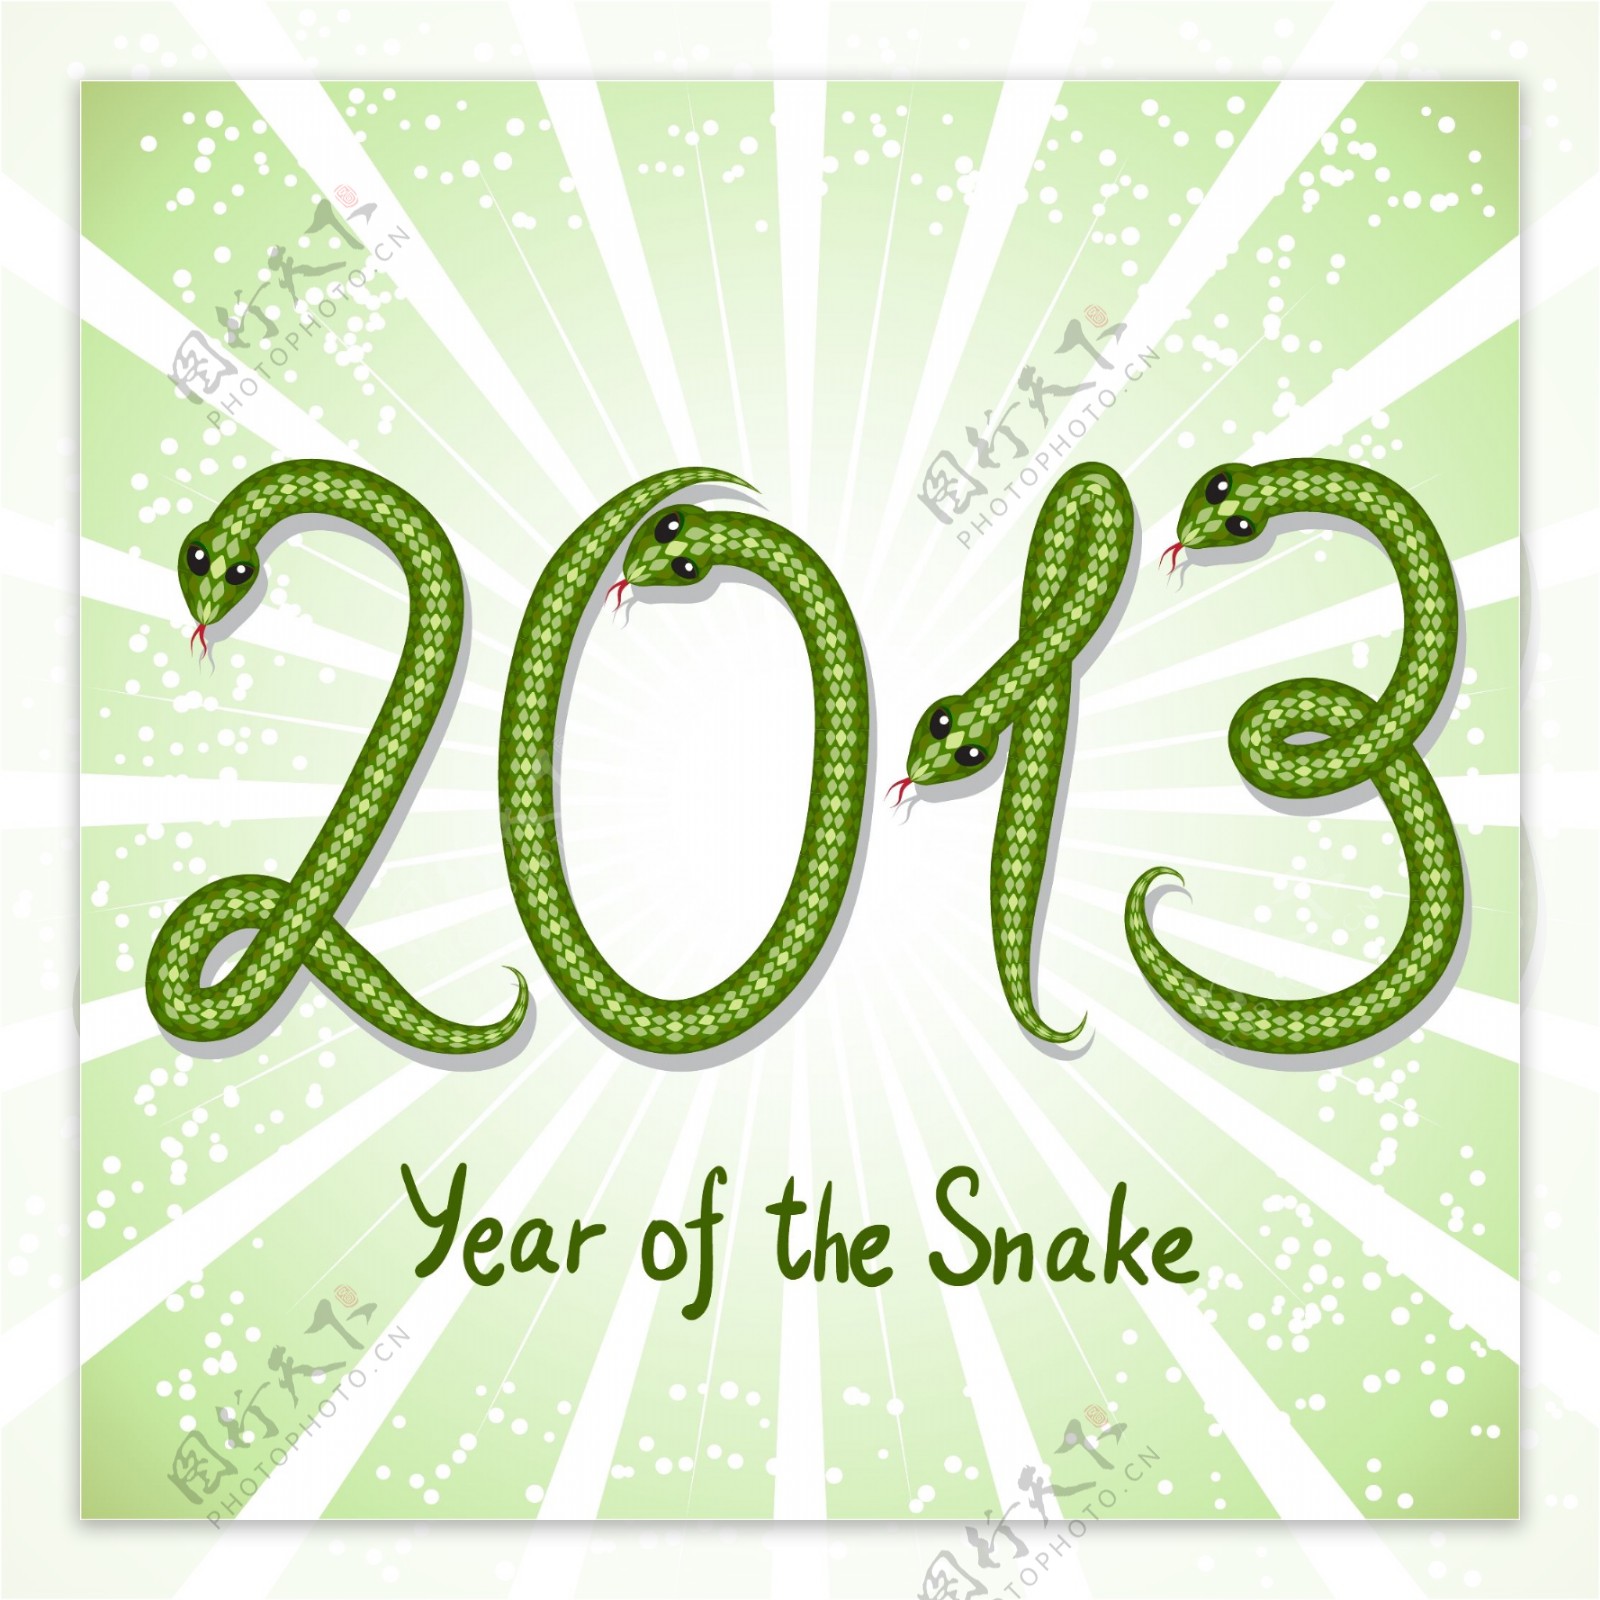 2013小蛇字体